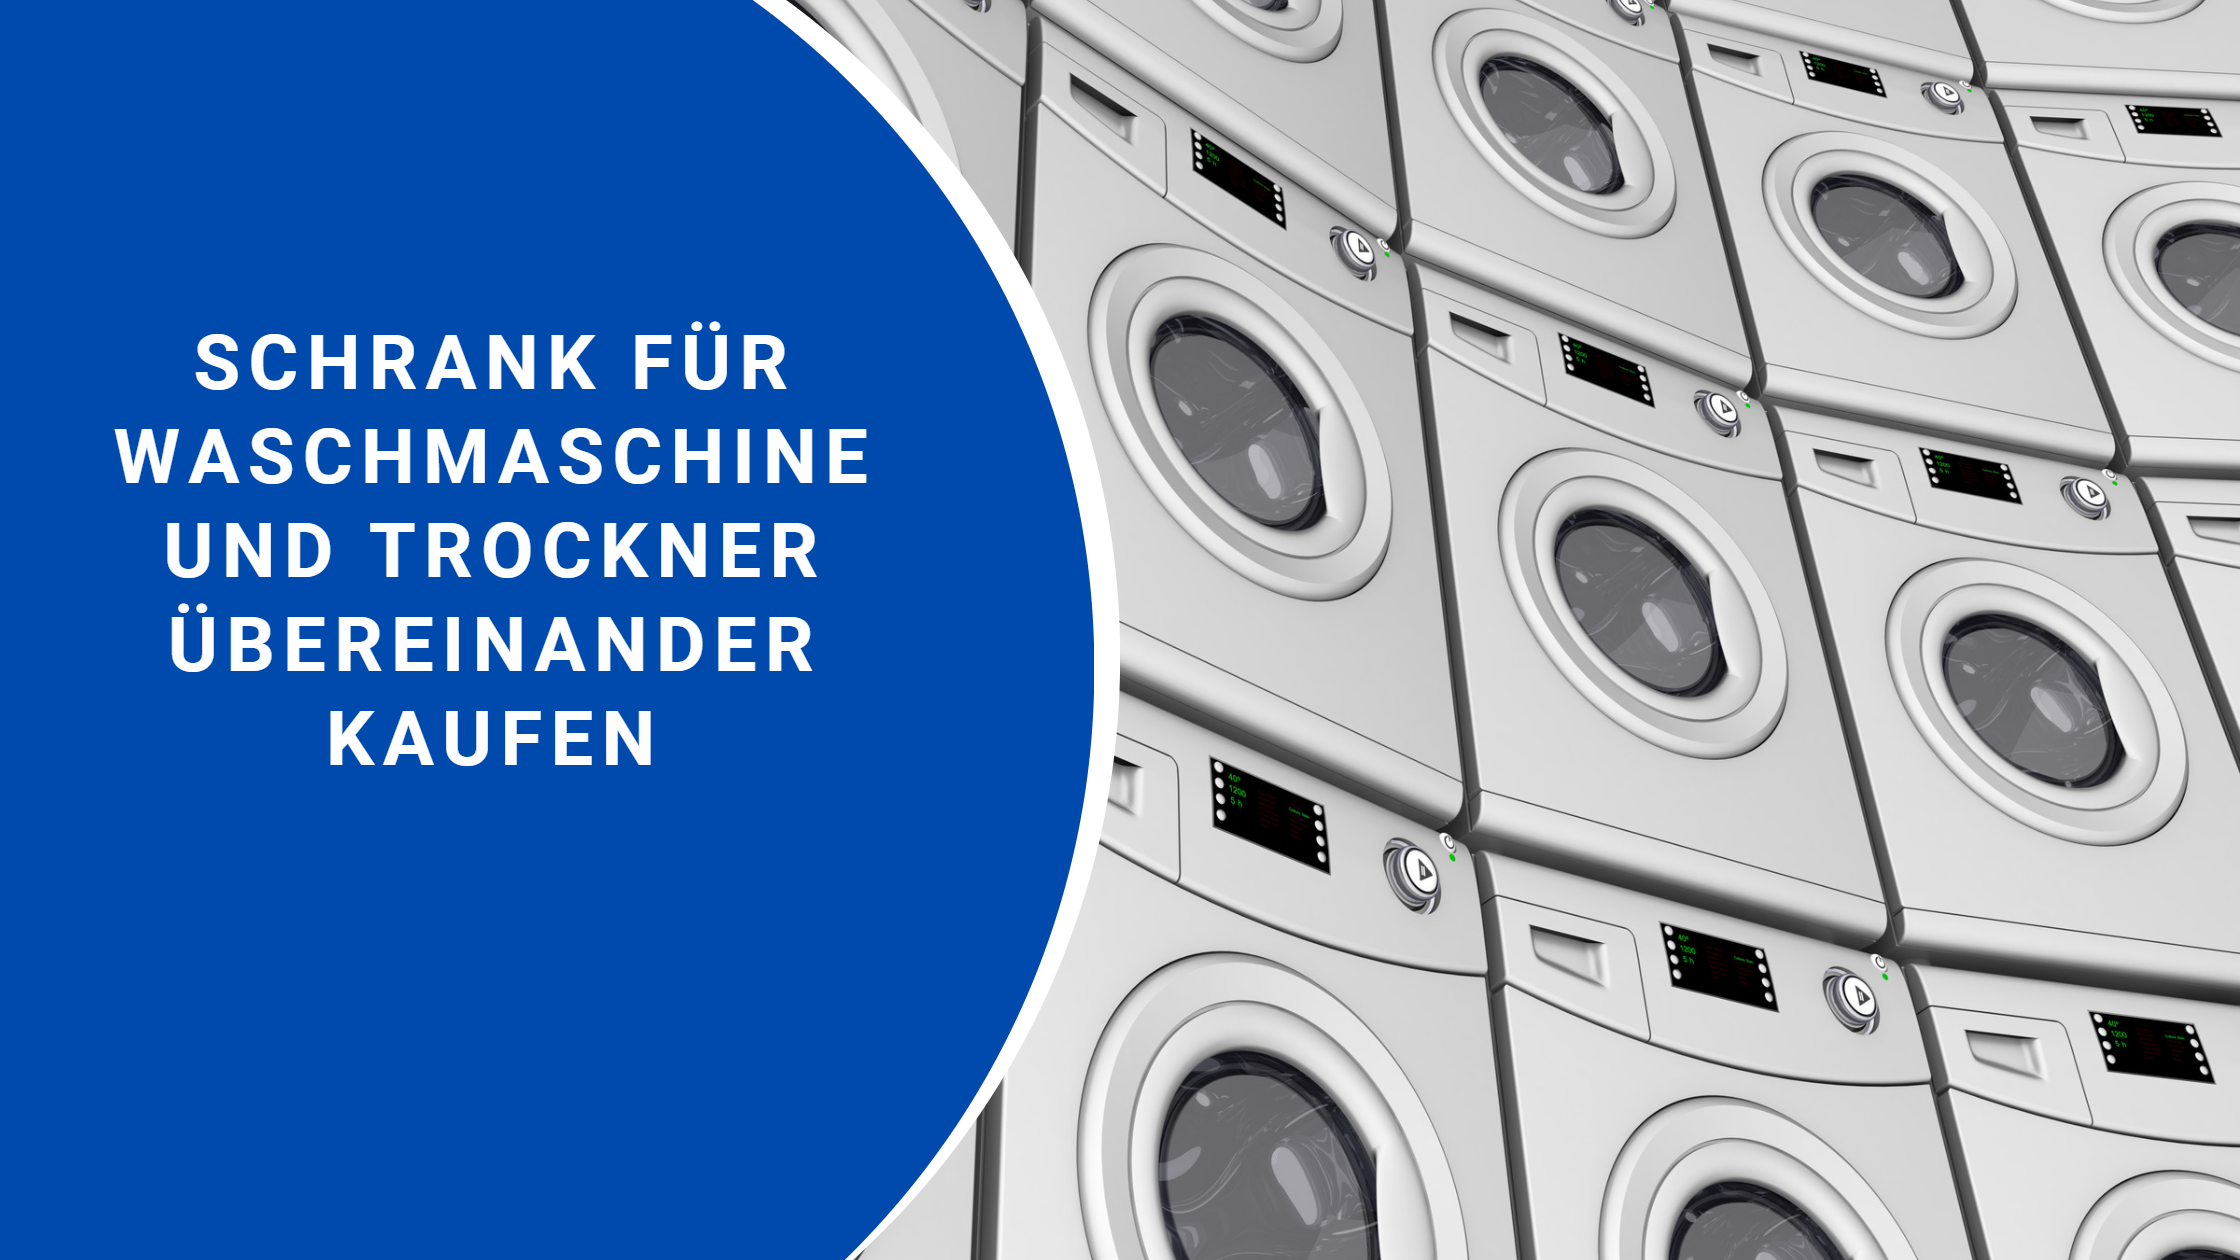 Schrank für Waschmaschine und Trockner übereinander kaufen